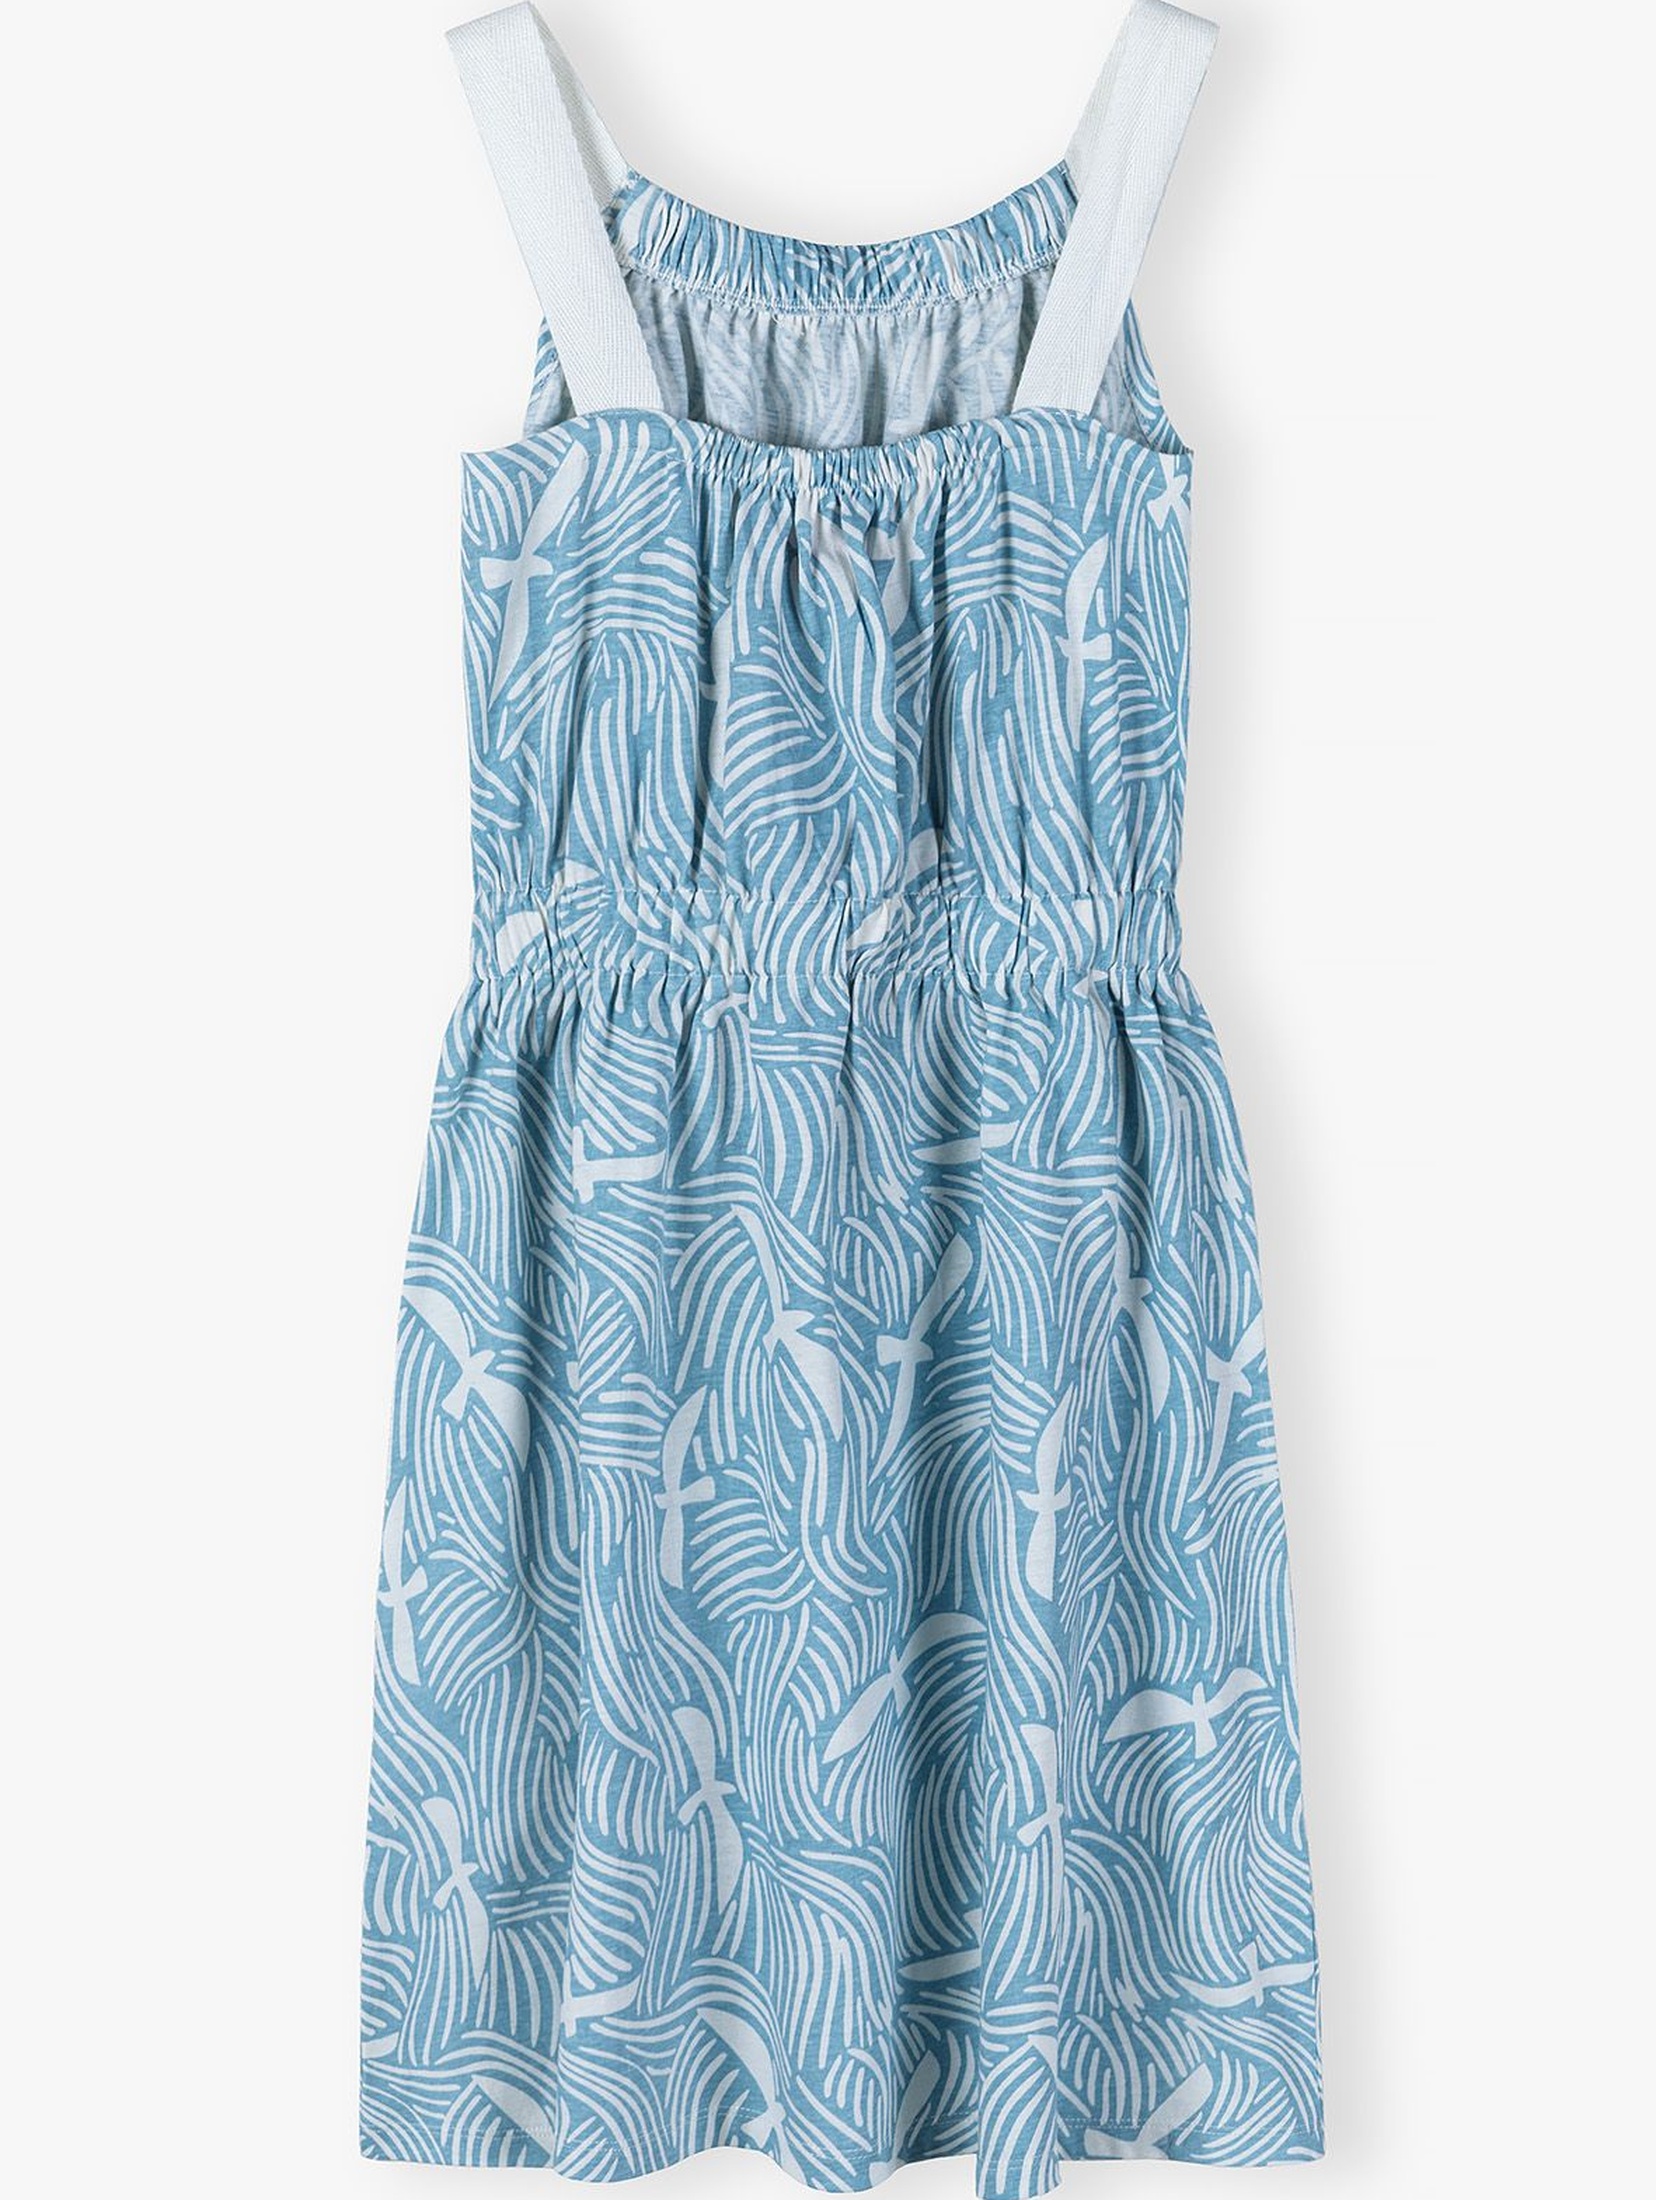 Bawełniana sukienka dla dziewczynki na lato - niebieska